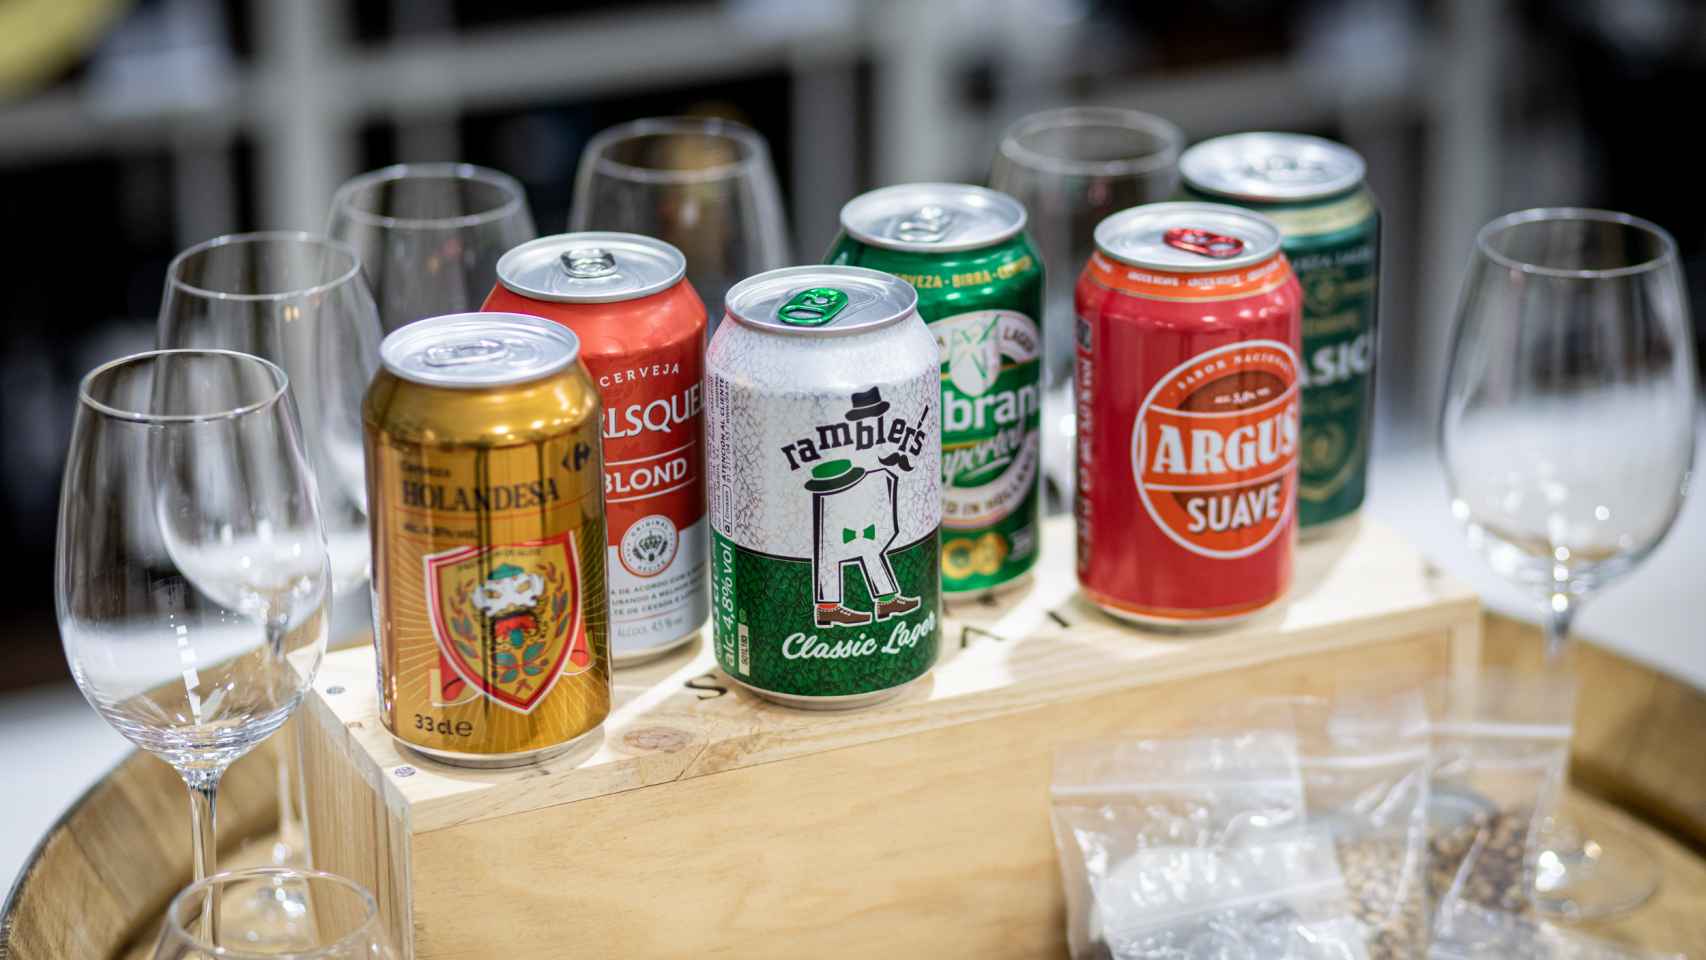 Las seis cervezas de tipo Lager de los supermercados analizadas en la cata.